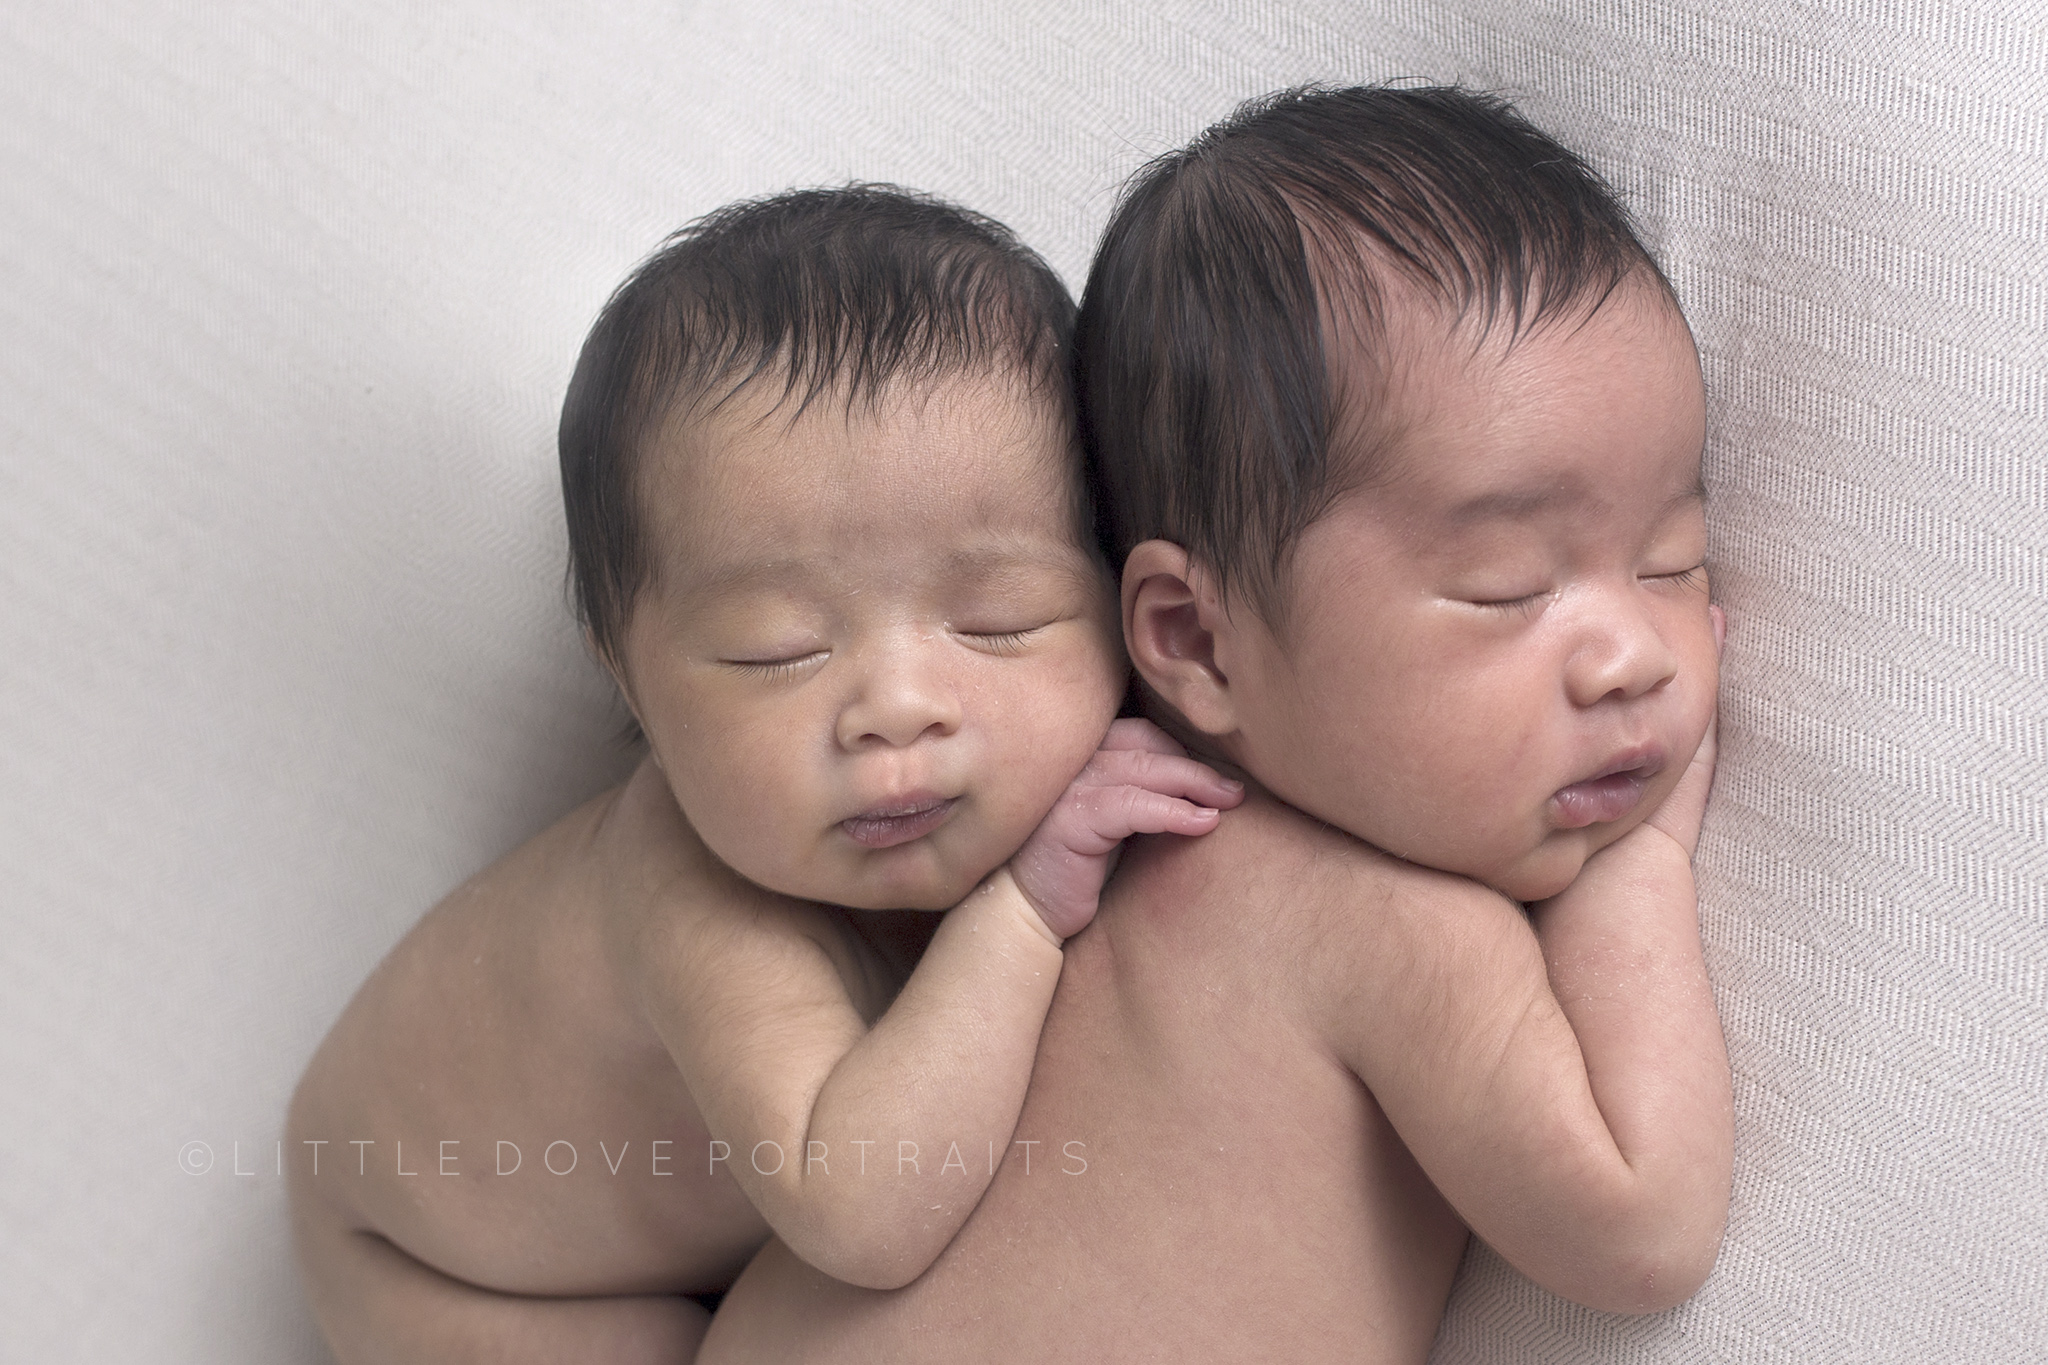 Plano TX Newborn photographer - Wylie studio - twins newborn portraits #dallasnewbornphotographer #newborntwins #planonewbornphotographer #newbornphotographer #maternityphotographer #famiyportraits